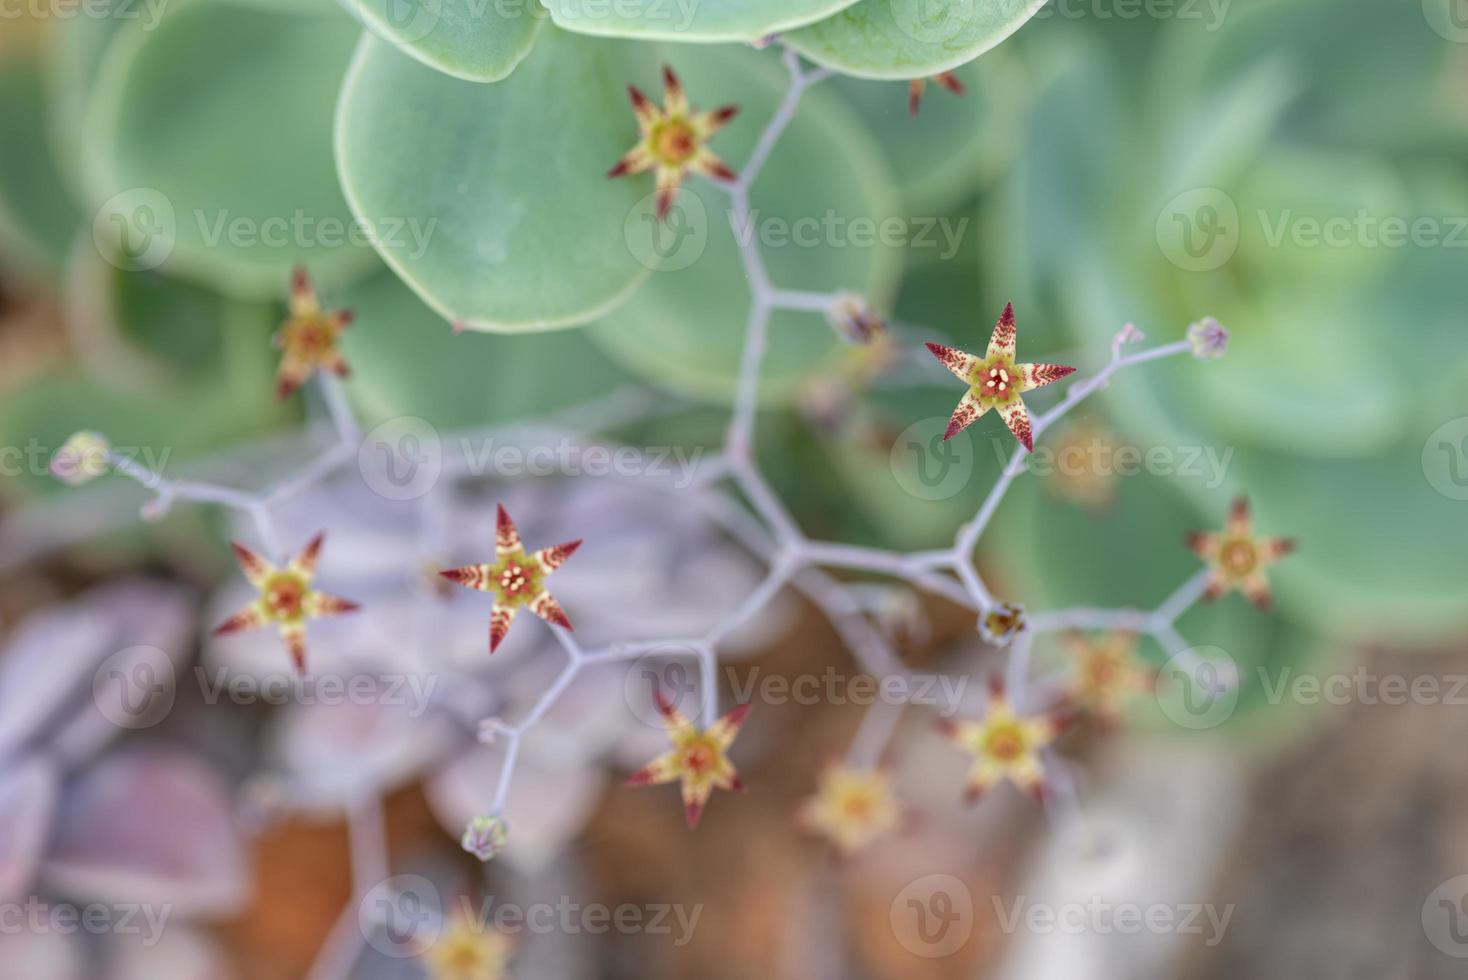 pequenas e adoráveis plantas suculentas de várias variedades foto